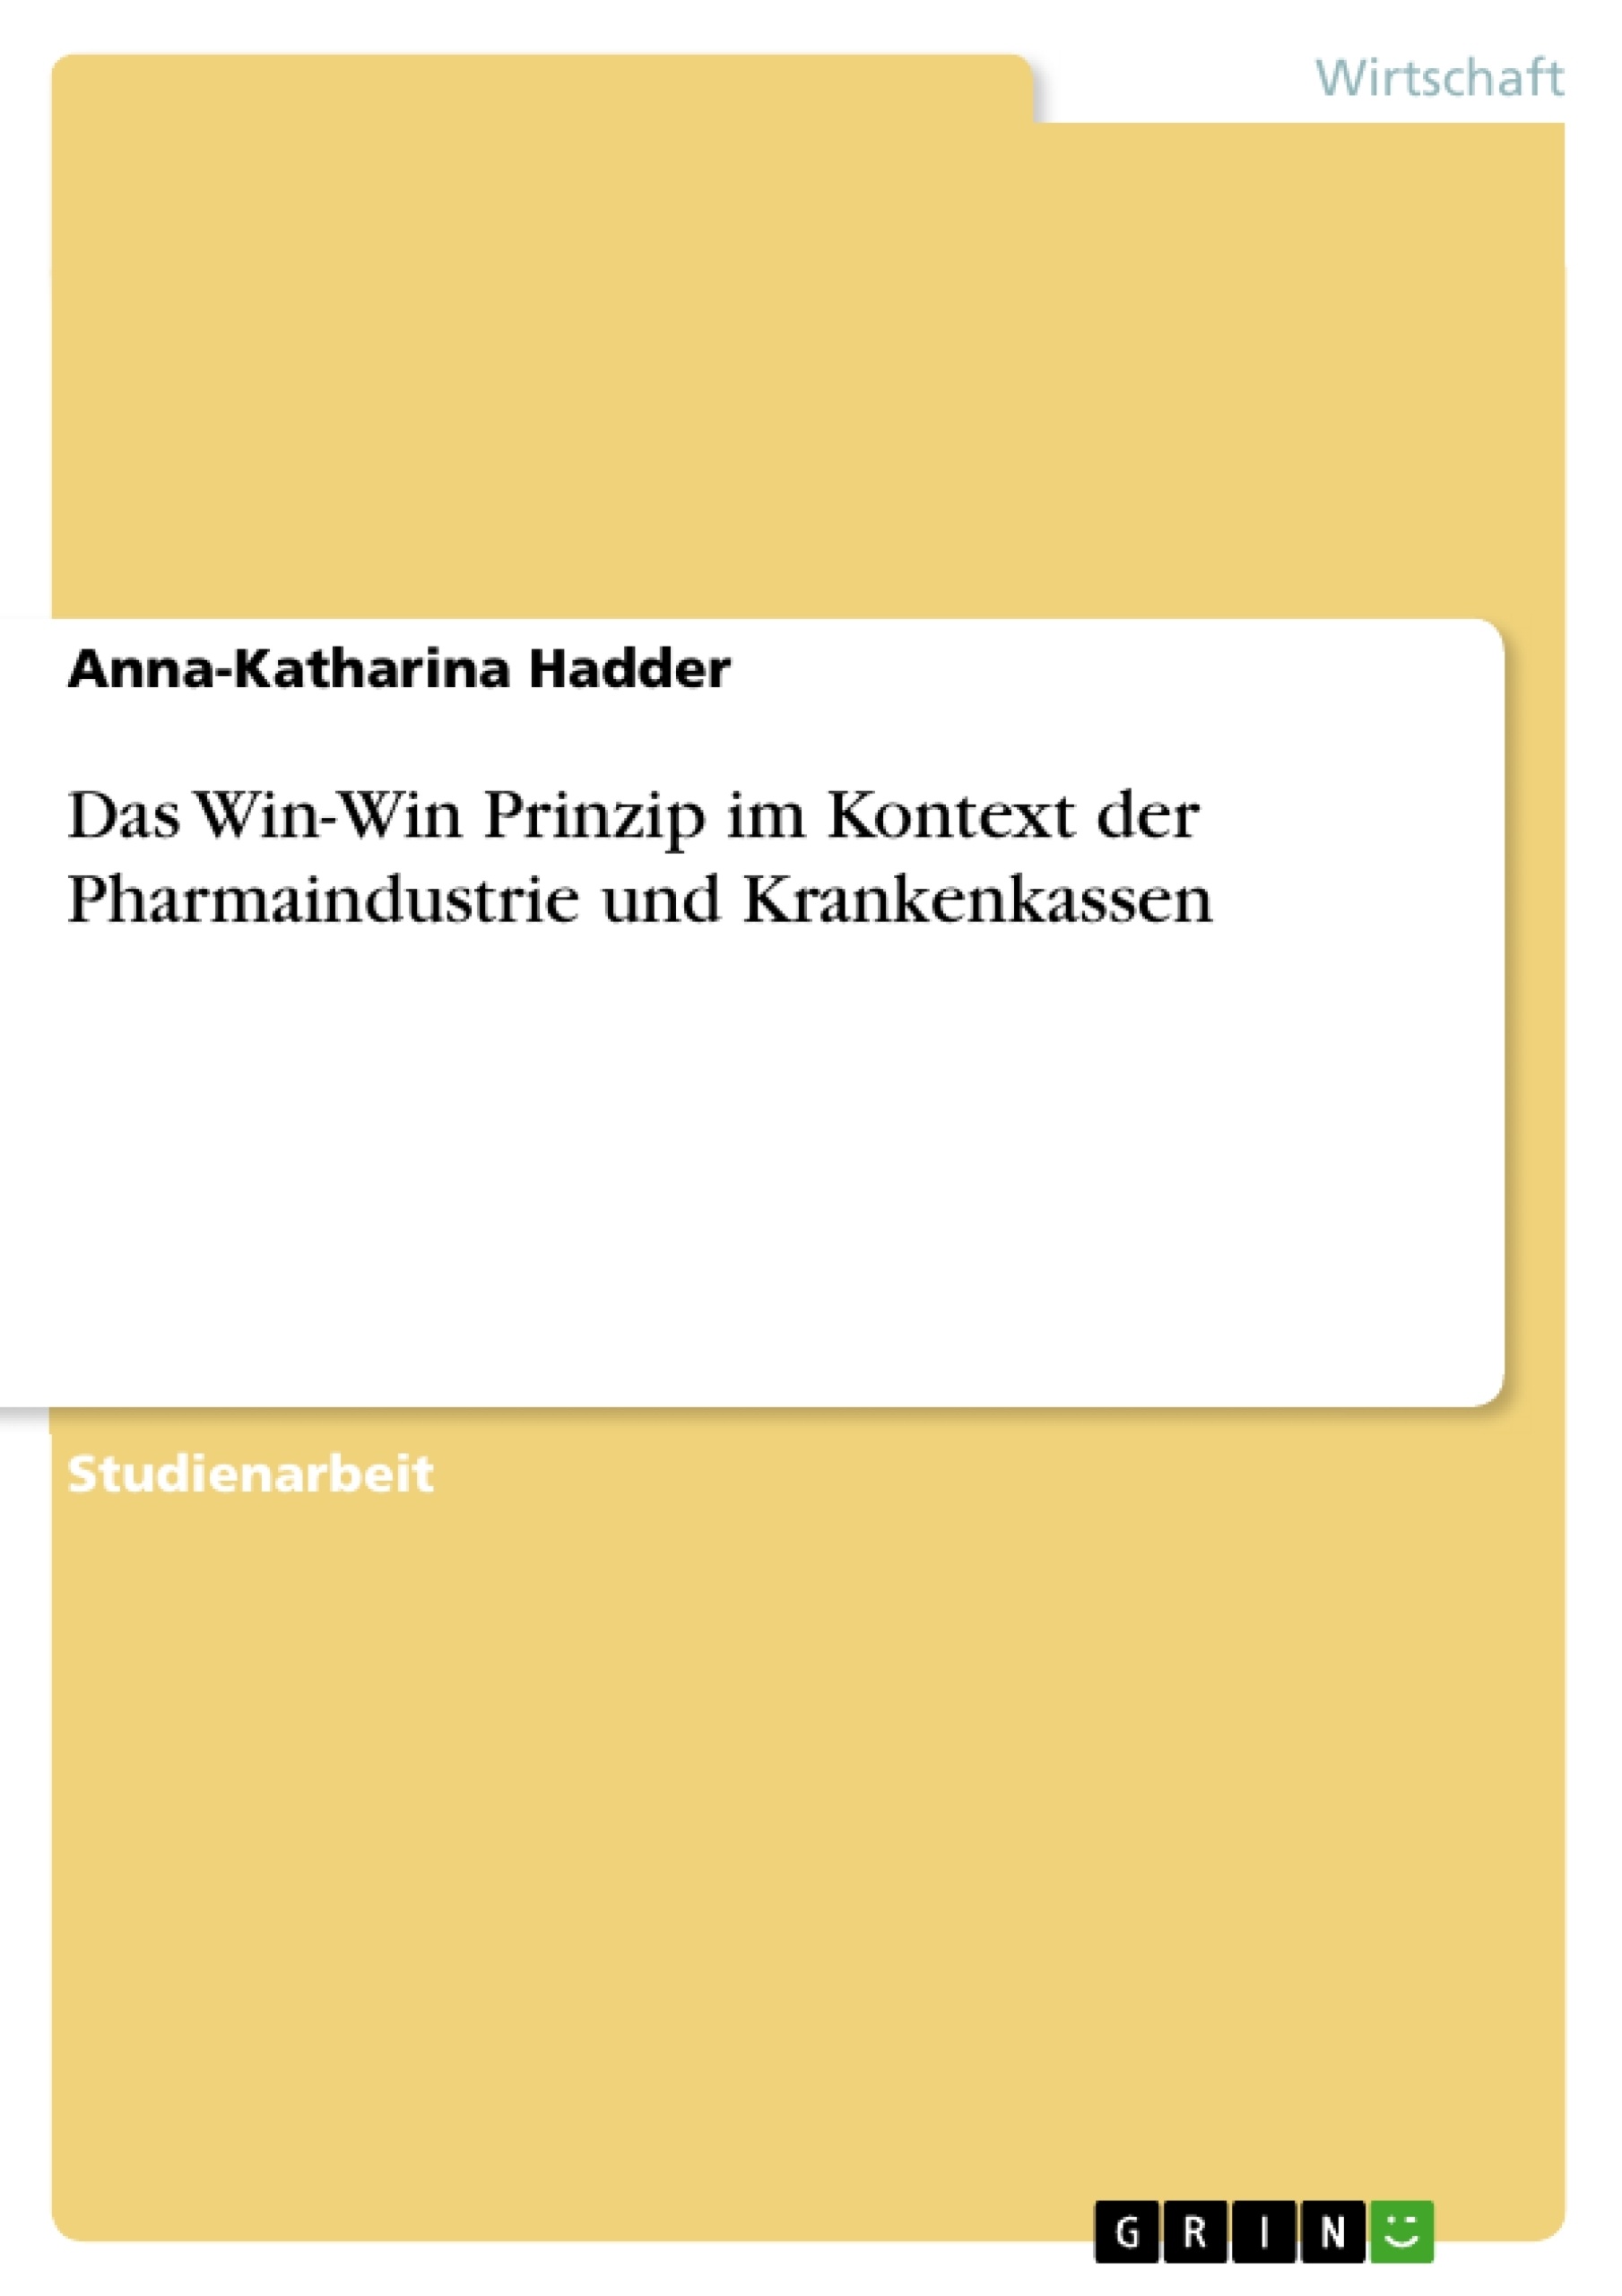 Title: Das Win-Win Prinzip im Kontext der Pharmaindustrie und Krankenkassen